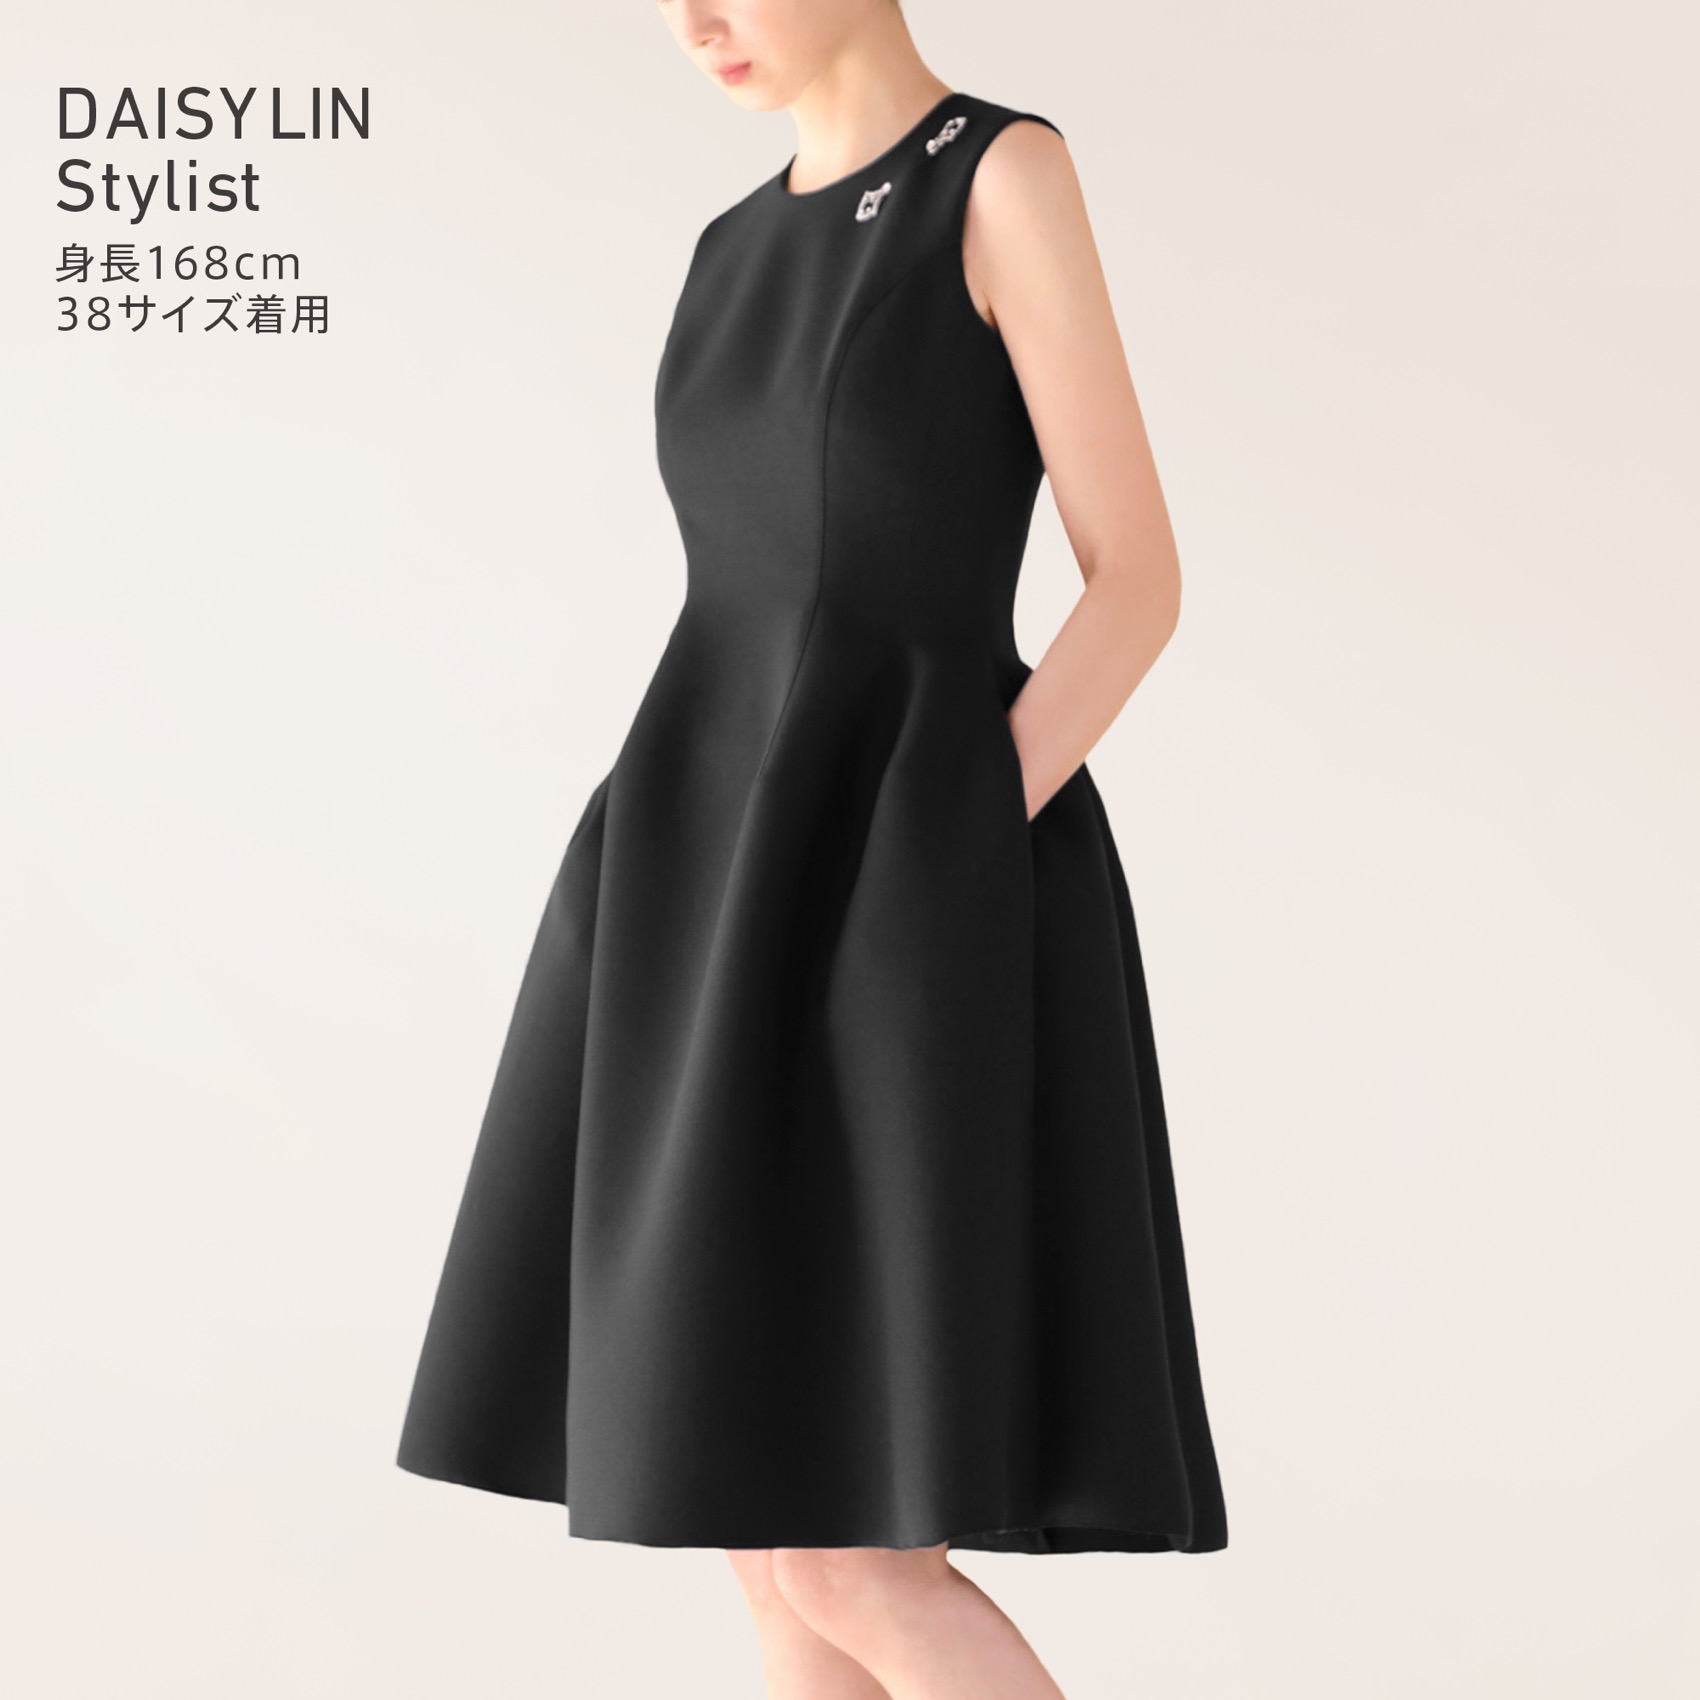 【訳あり】  42サイズ新品未使用 Dress Black x Beige LIN DAISY ひざ丈ワンピース